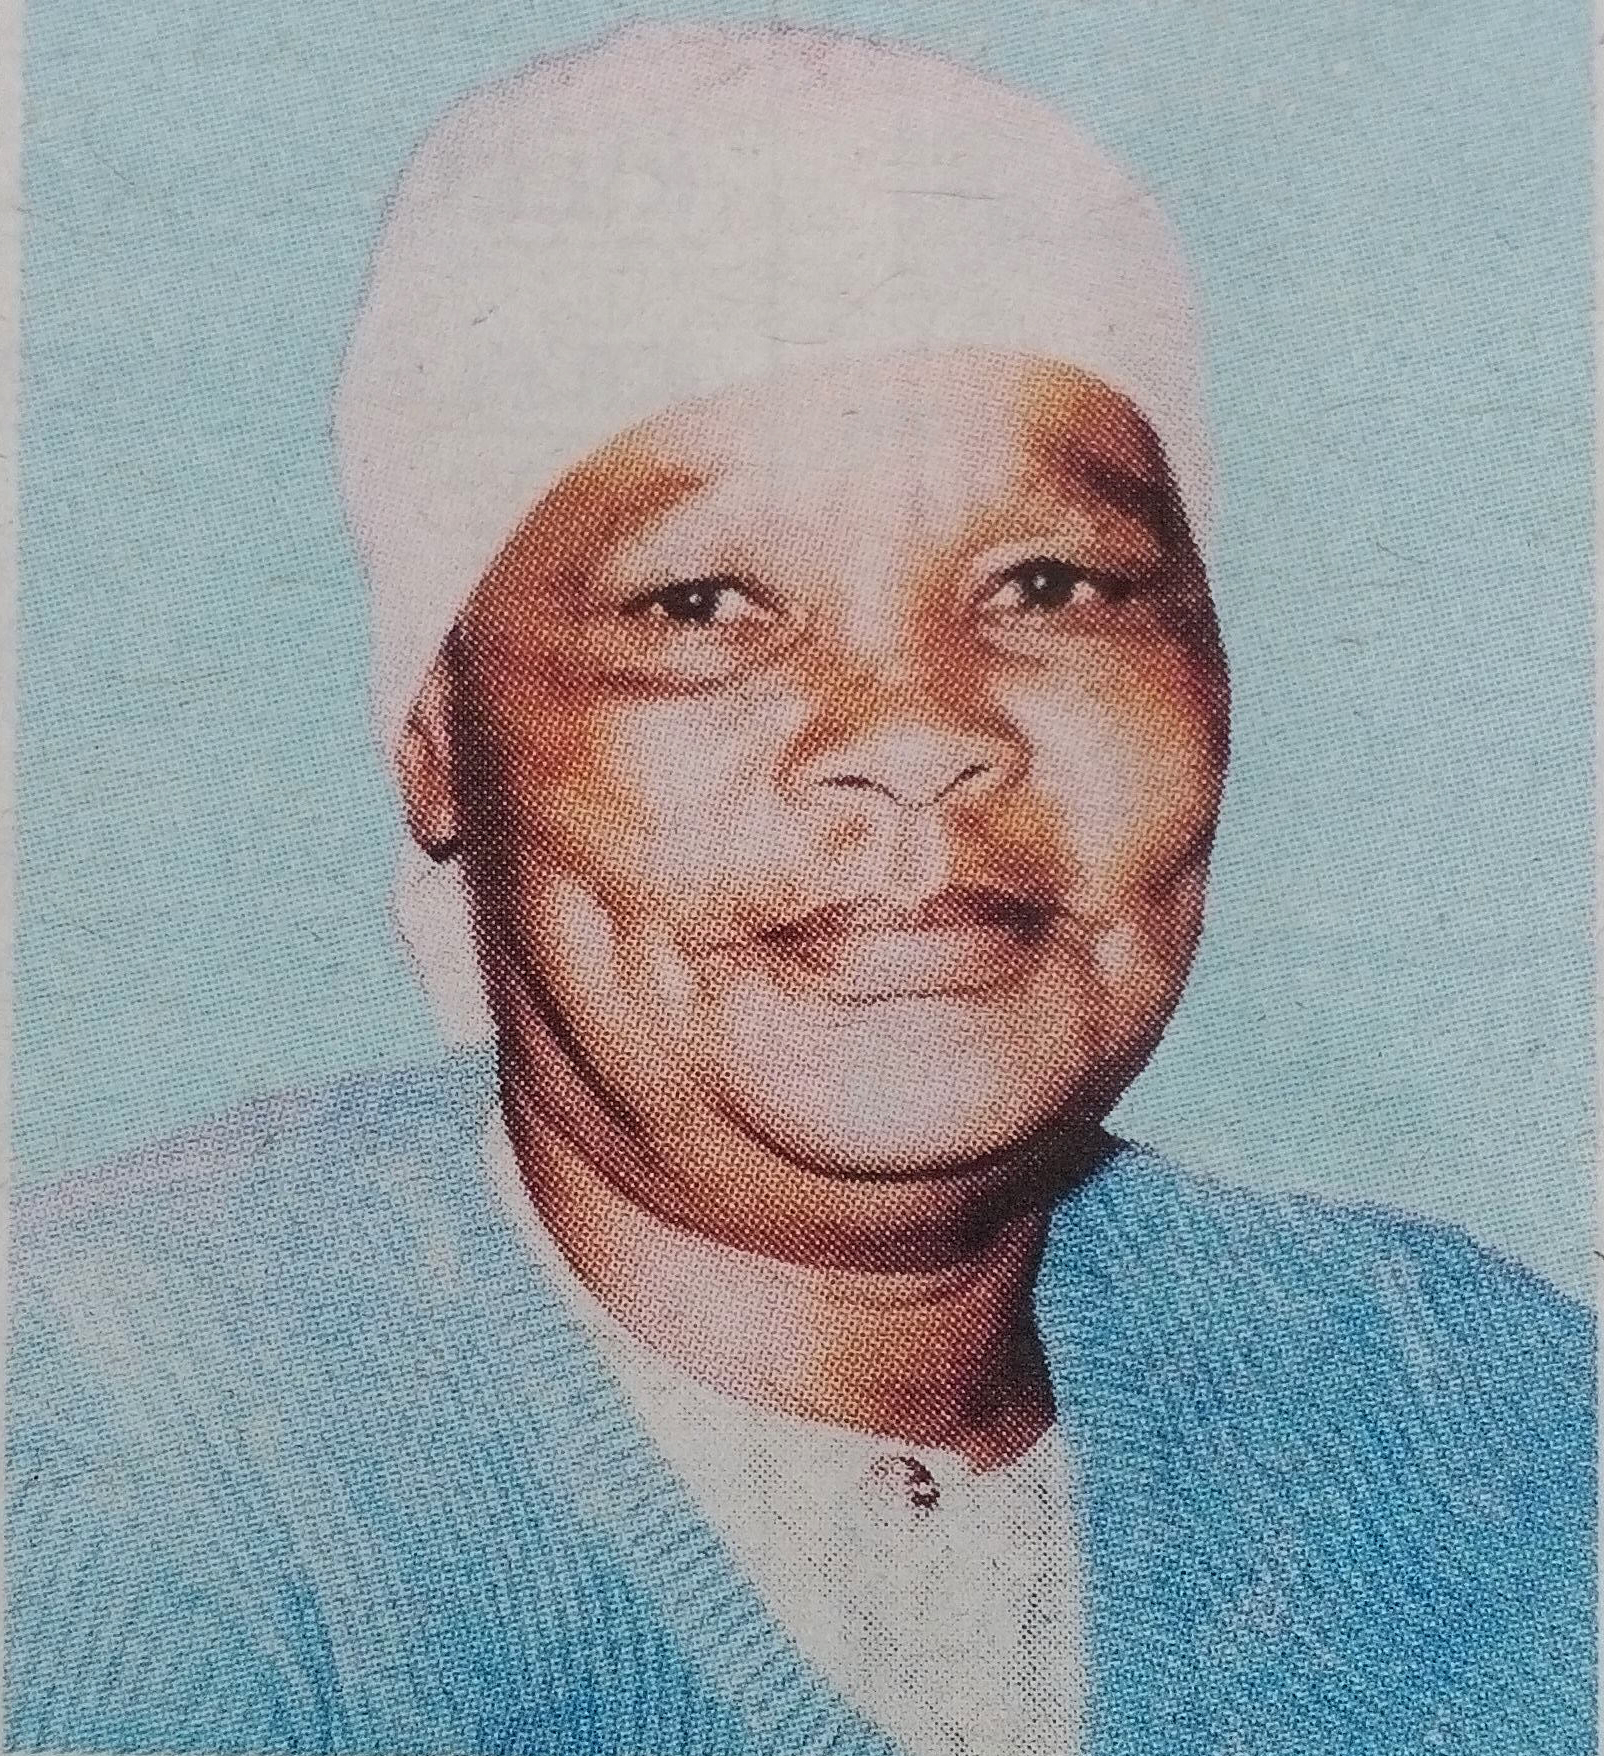 Obituary Image of Martha Joshua Kalute